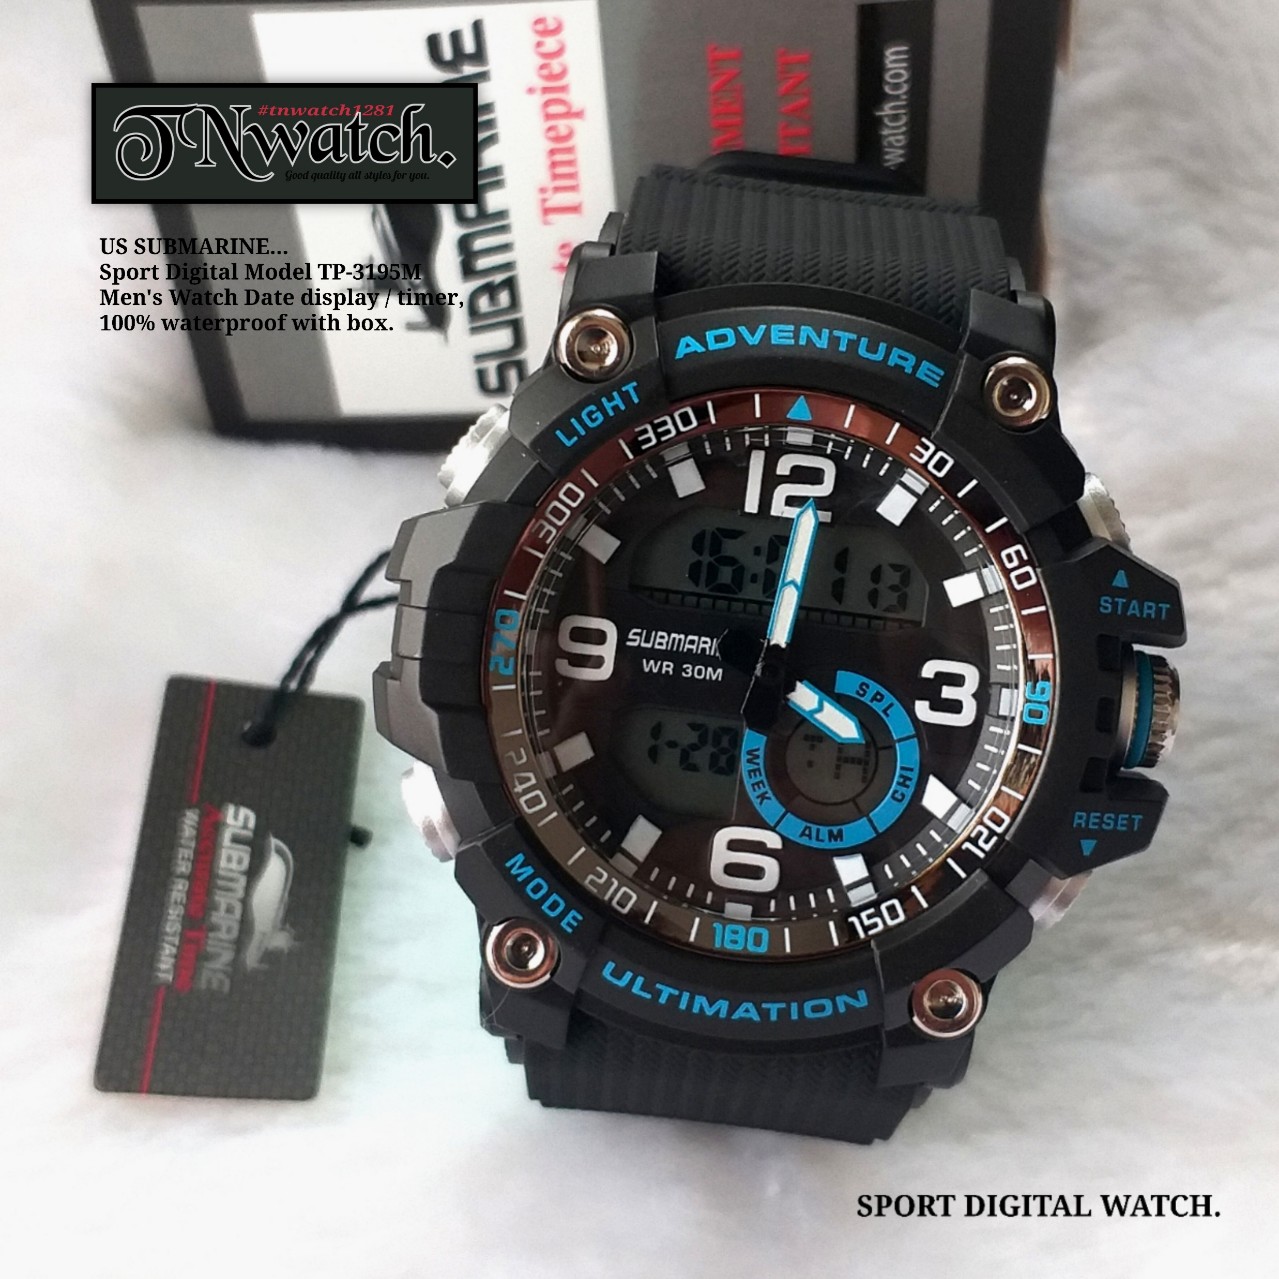 us submarine SPORT DIGITAL รุ่น TP-3195M นาฬิกาข้อมือ นาฬิกาผู้ชาย/กีฬา/ออกกำลังกาย/ว่ายน้ำ แสดงวันที่กันน้ำ100%พร้อมกล่อง สีดำ ร้านขายนาฬิกาTN-WATCH1281